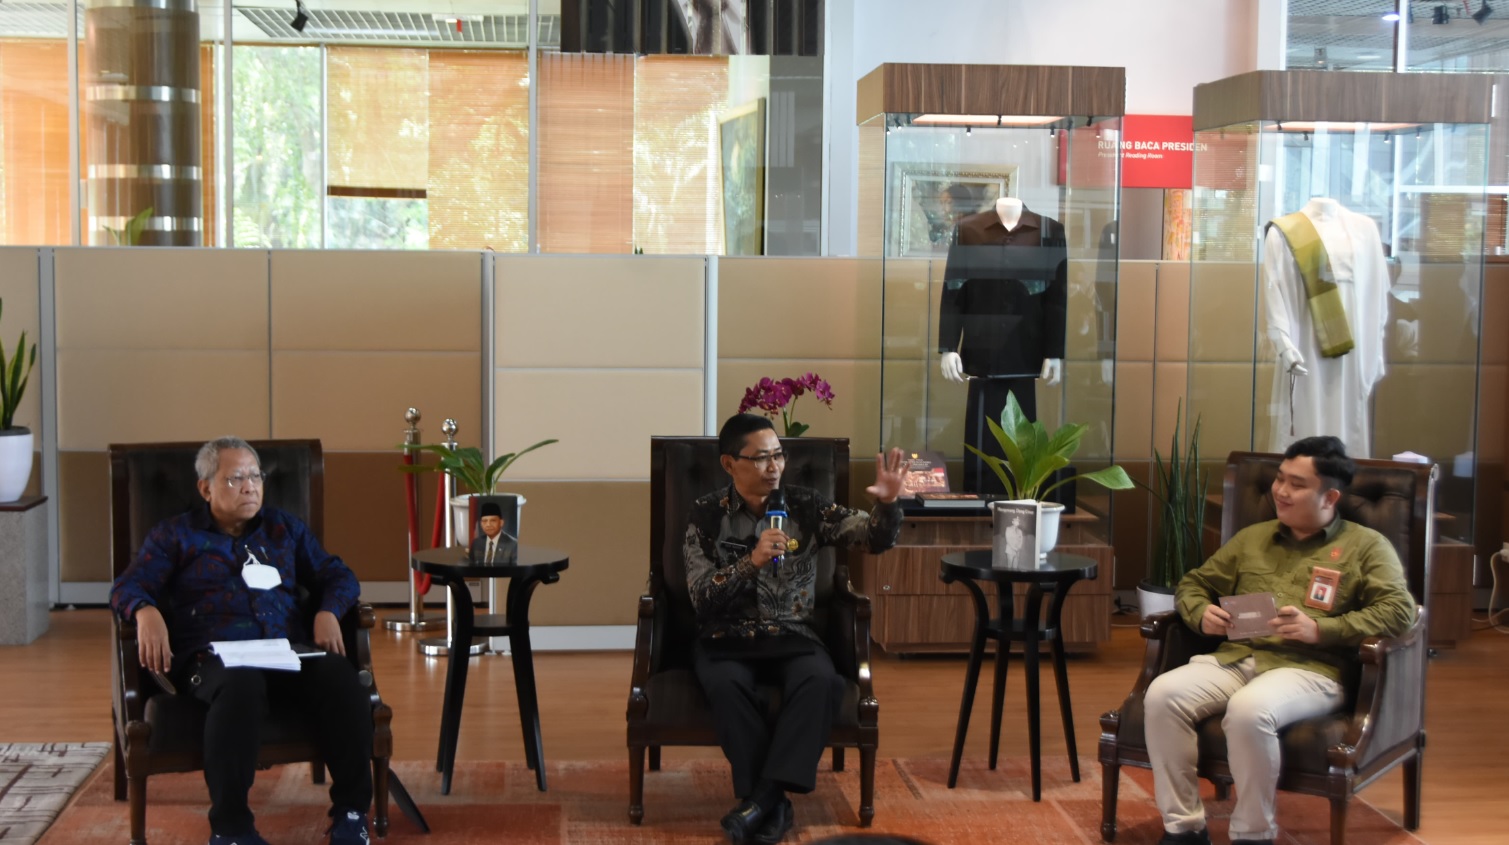 Silawapres Episode #3 “Umar Wirahadikusumah: Dari Sumedang Untuk Indonesia”